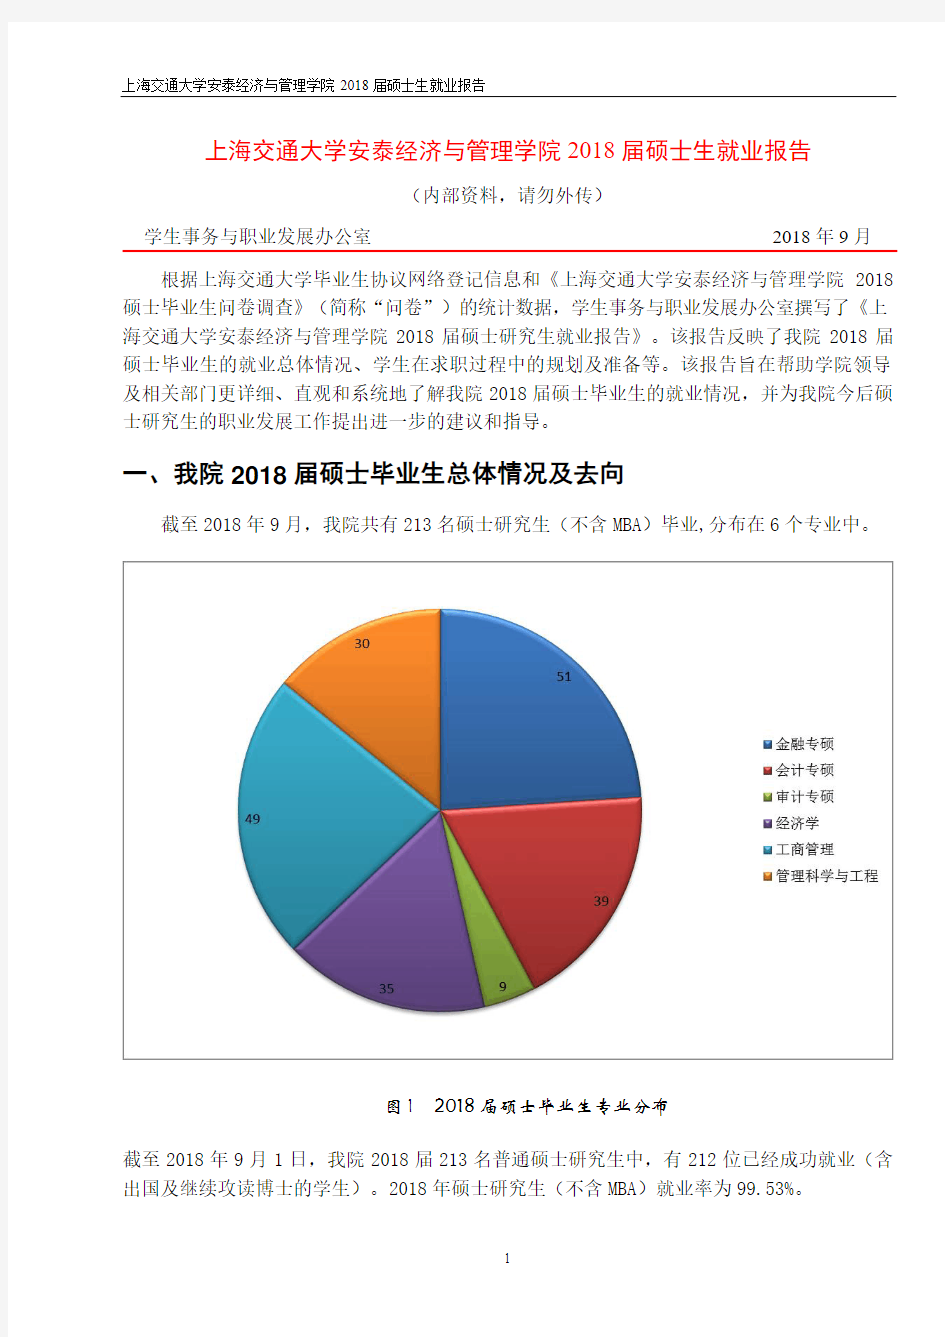 上海交通大学安泰经济与管理学院2018届硕士生就业报告